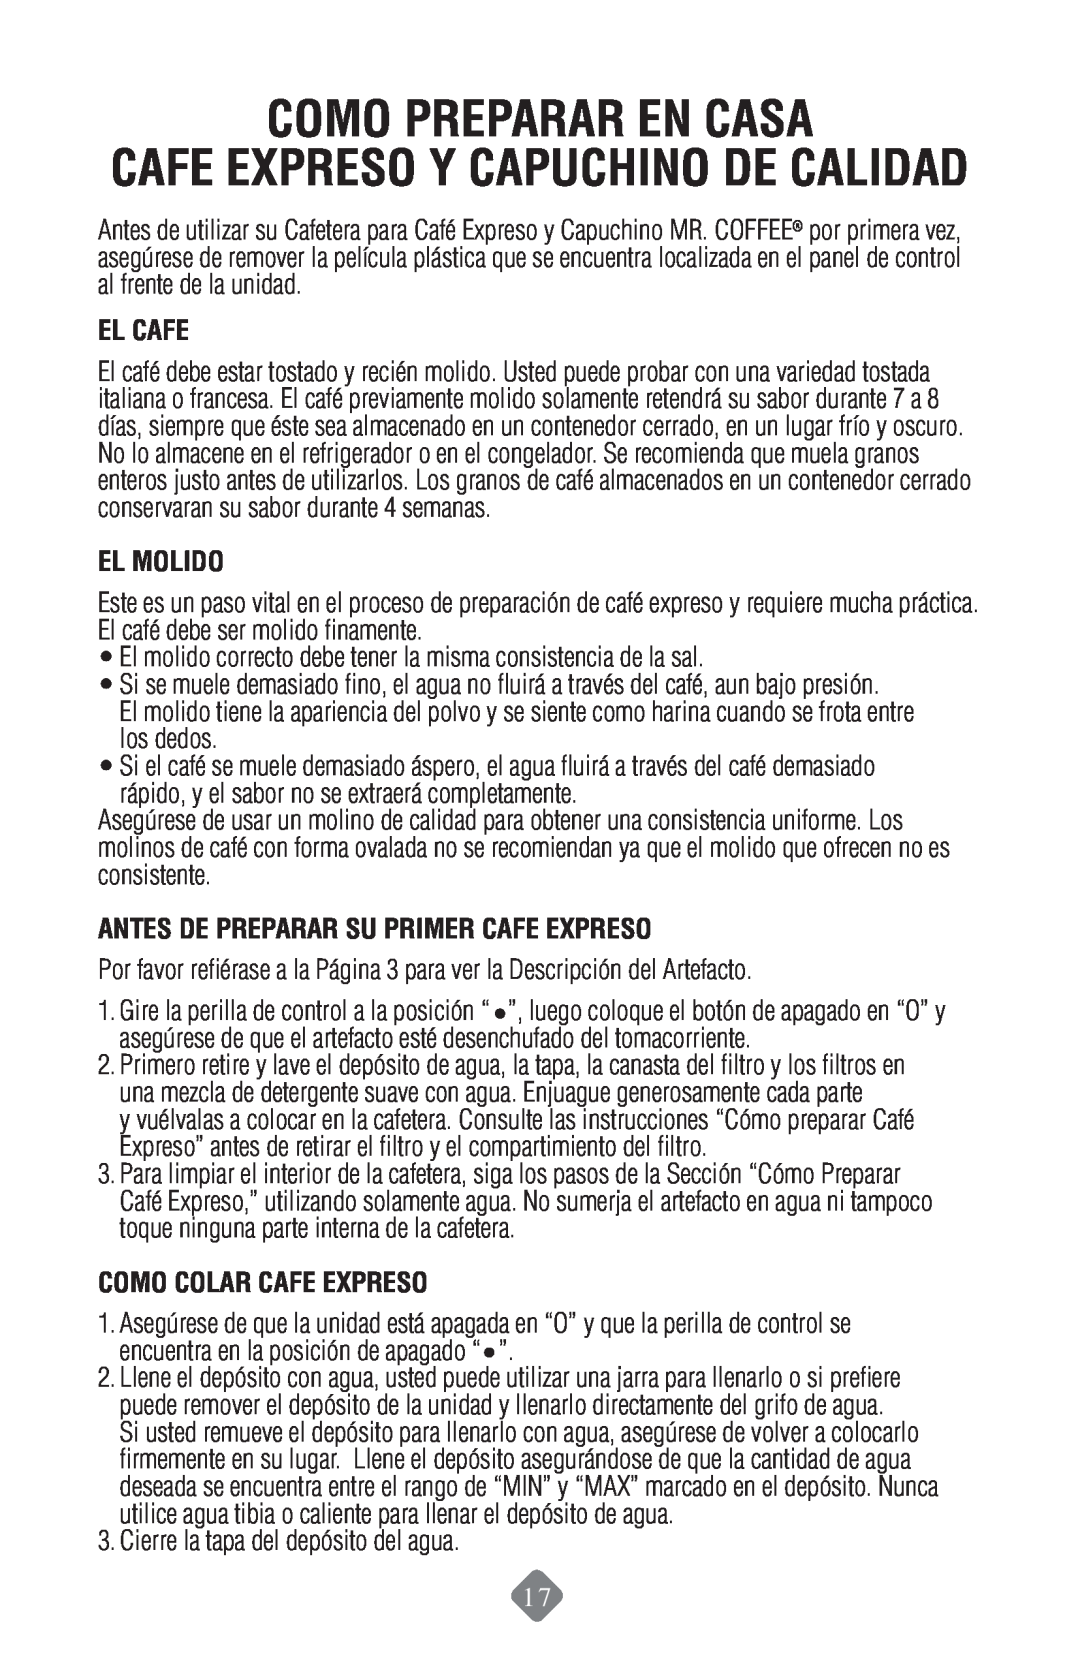 Mr. Coffee ECMP50 Como Preparar En Casa, Cafe Expreso Y Capuchino De Calidad, El Cafe, El Molido, Como Colar Cafe Expreso 